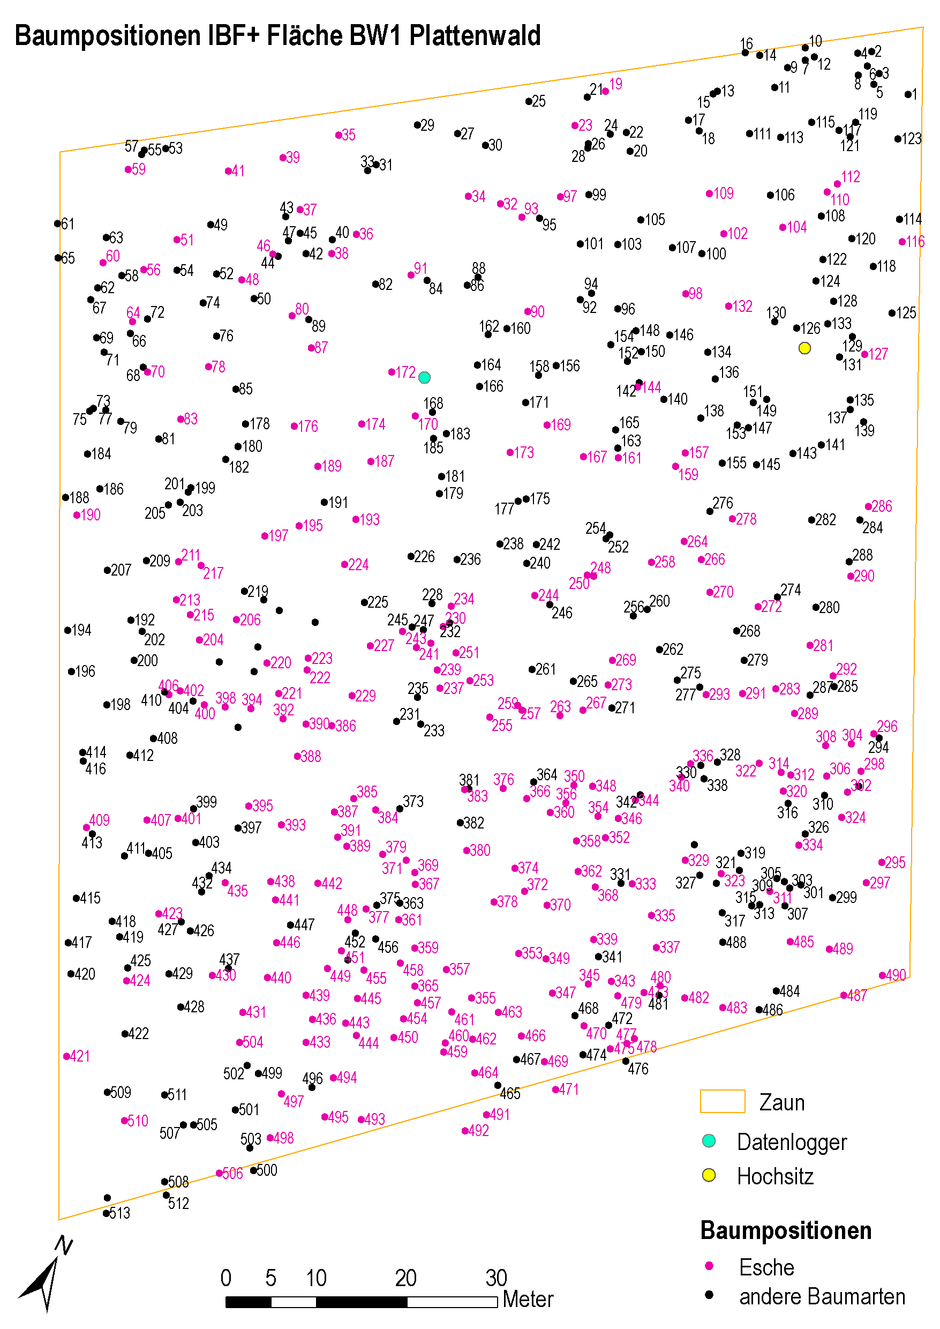 Das Foto zeigt die Stammfusskarte der Untersuchungsfläche Plattenwald in Baden-Württemberg. Die über 500 Bäume auf der IBF wurden einzelnd eingemessen und als Karte ausgegeben. In der Darstellung sind die Eschen farblich hervorgehoben. Außerdem sind der Zaun, der Datenlogger und ein Hochsitz zur Orientierung dargestellt. Mit dem Nordpfeil und der Skala können sich die Forschenden auf der Fläche orientieren.